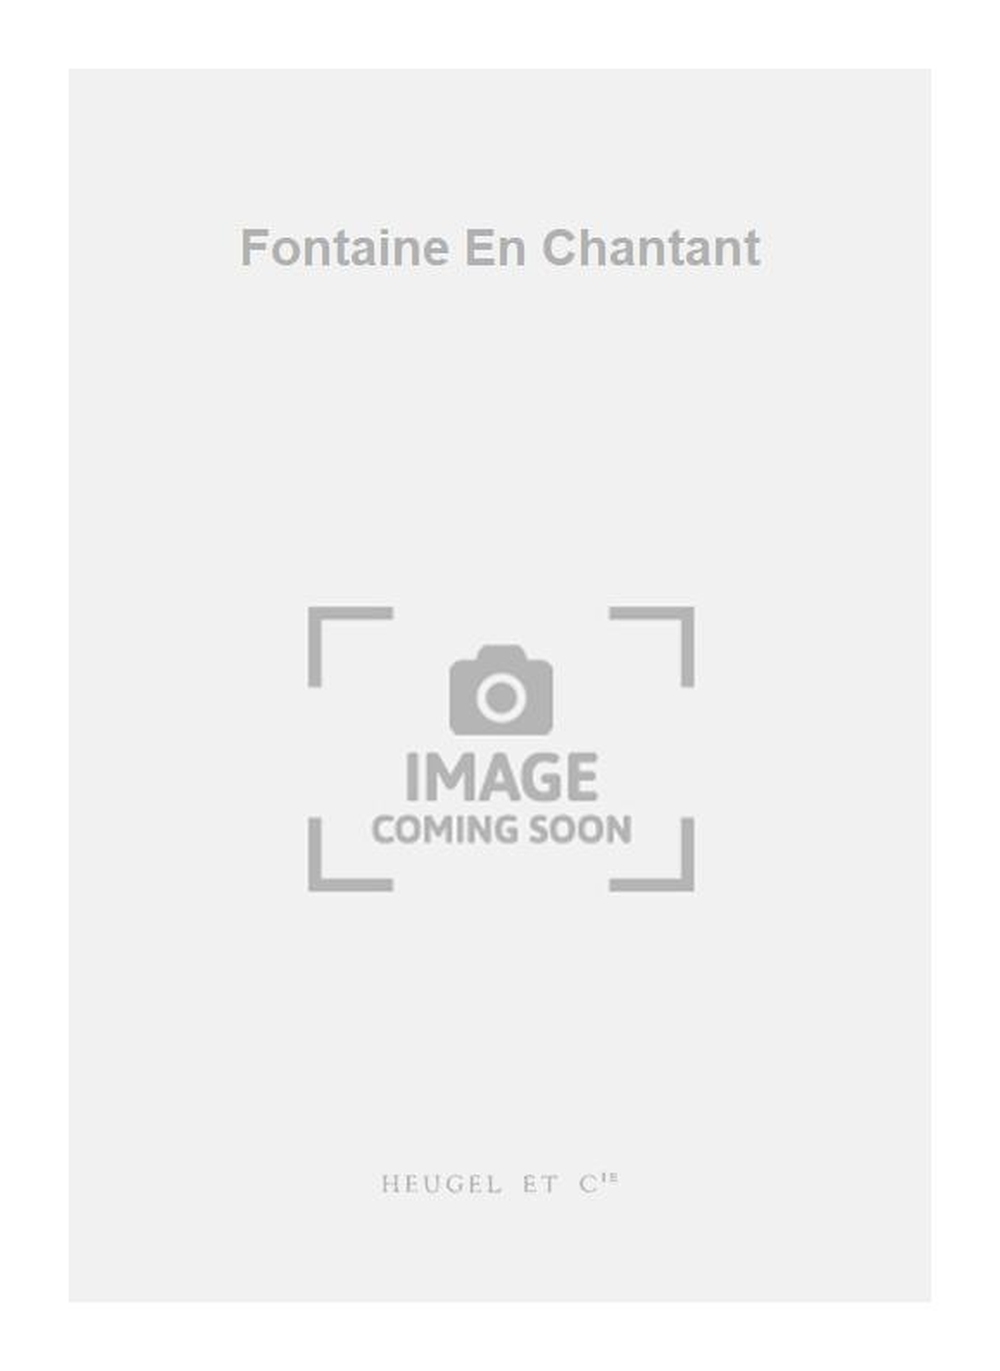 Jean-Marie Morel: Fontaine En Chantant